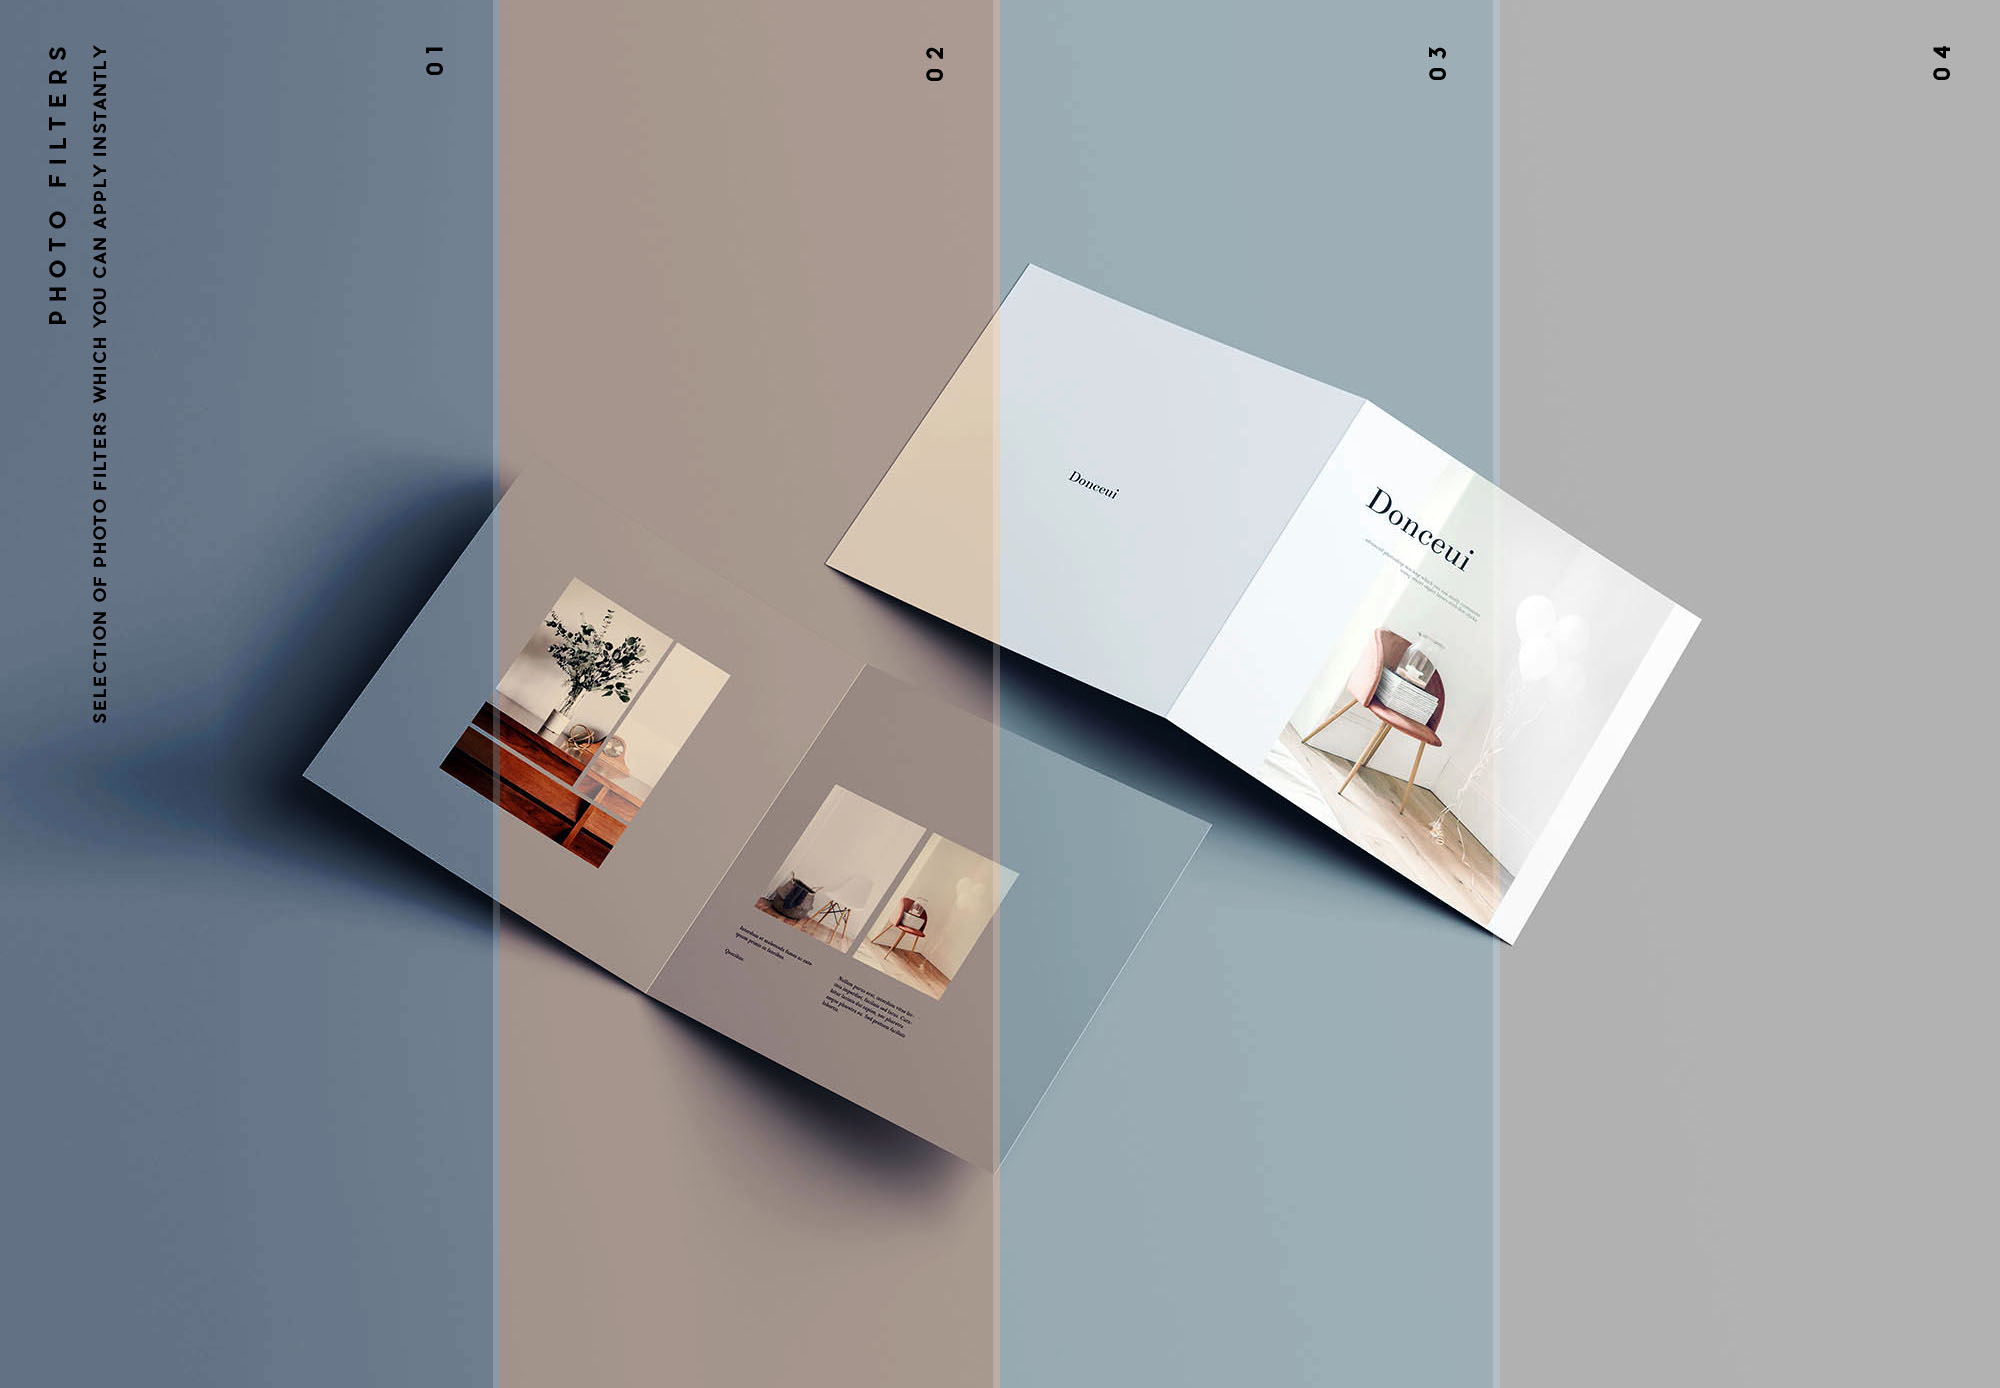 方形双折叠小册子封面&内页设计图样机第一素材精选 Square Bifold Brochure Mockup插图(10)